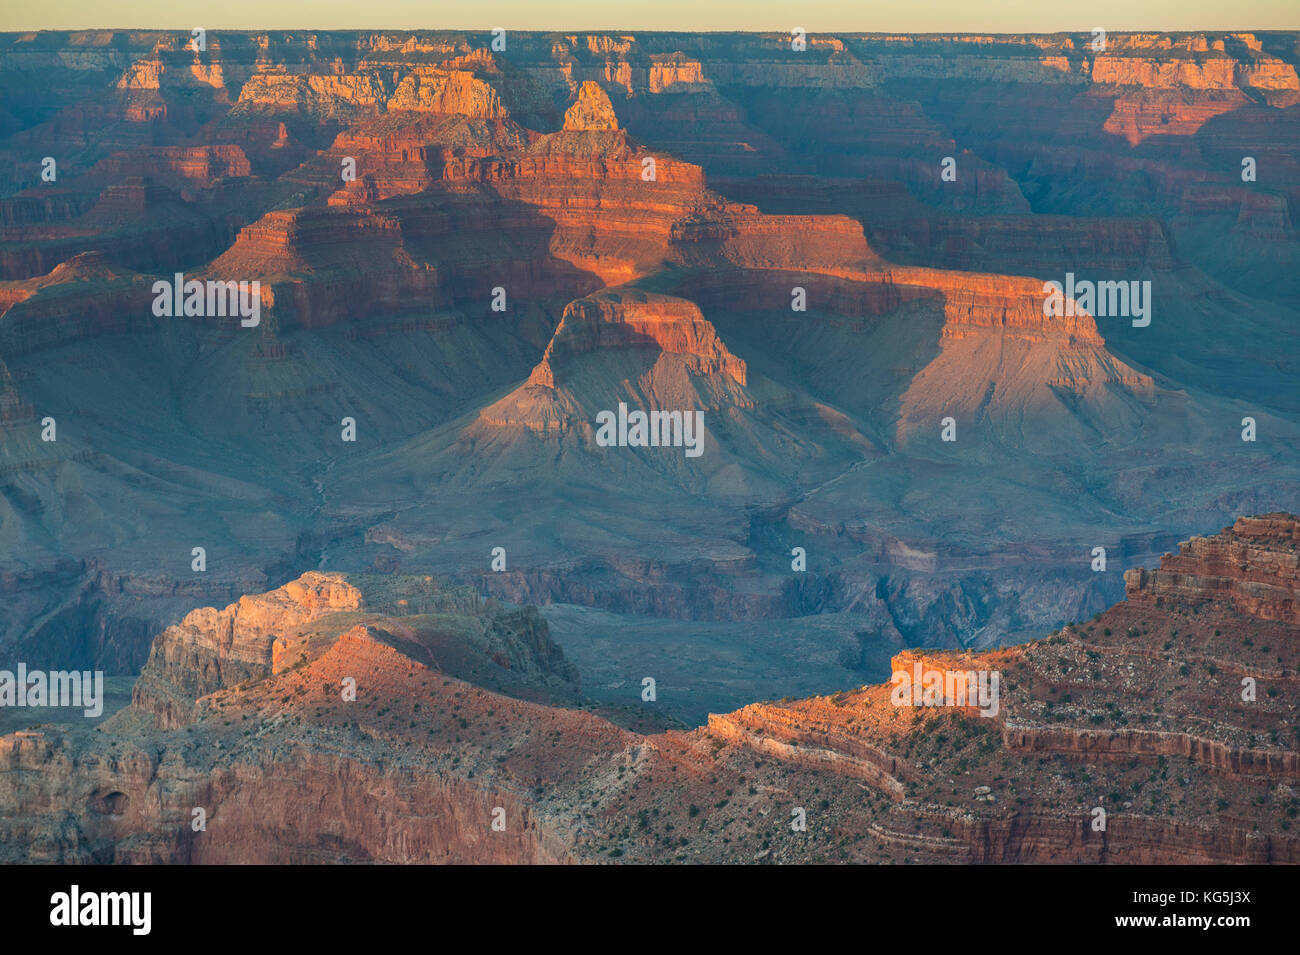 Tramonto sul bordo sud del Grand Canyon, Arizona, Stati Uniti d'America Foto Stock